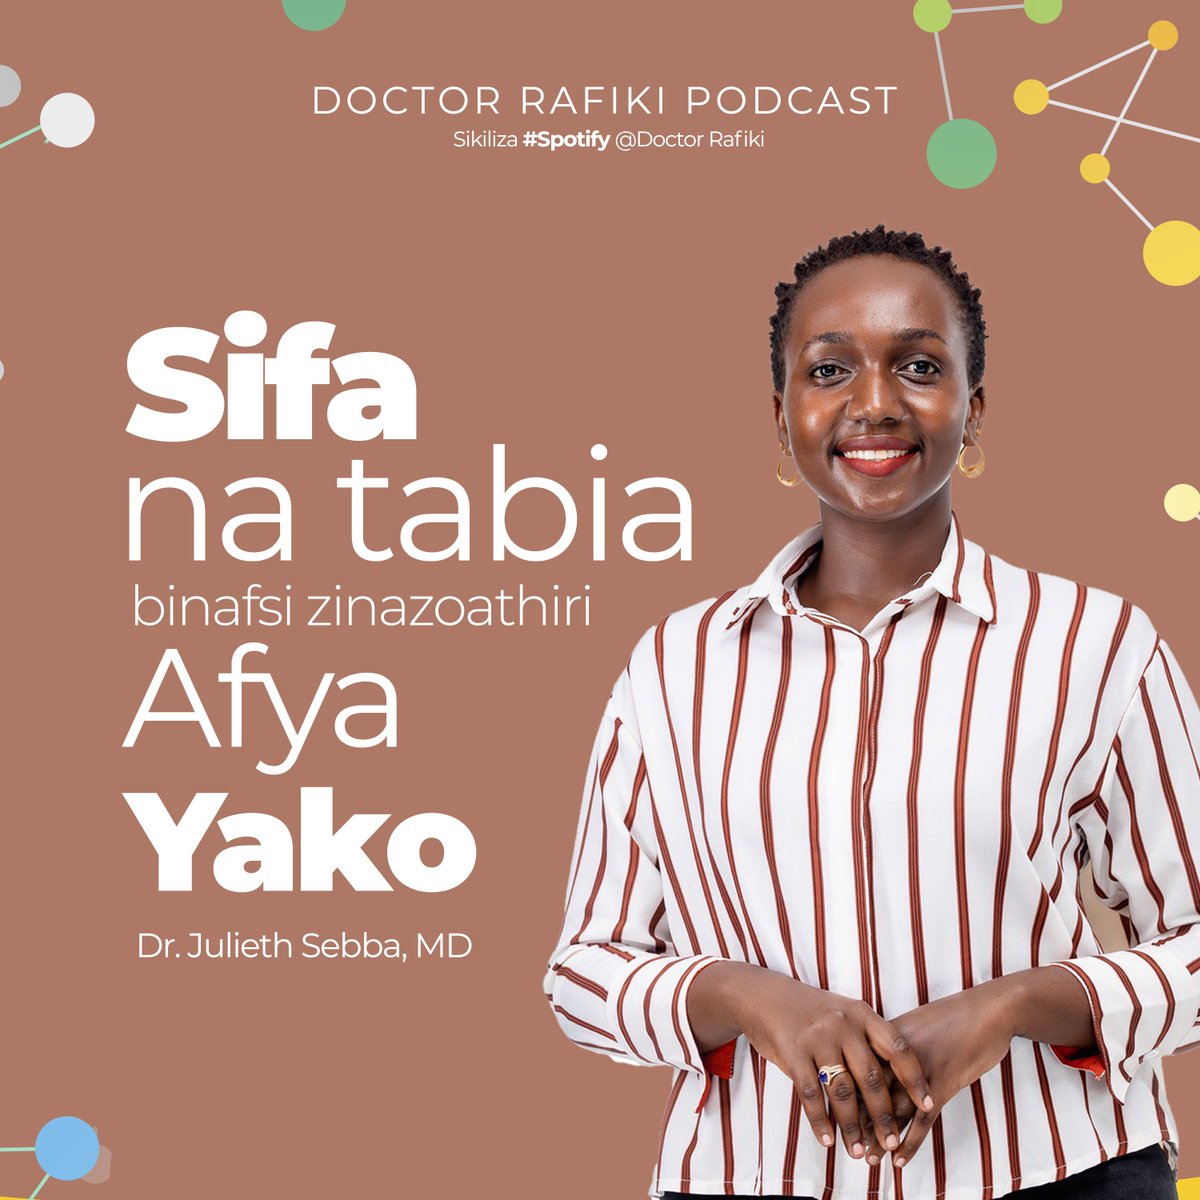 Sikiliza episode mpya ya #DoctorRafiki na @JuliethSebbaMD tukizungumzia 'Sifa na tabia binafsi zinazoathiri Afya yako'. Bonyeza link ifuatayo kusikiliza: open.spotify.com/episode/0FrBSo…